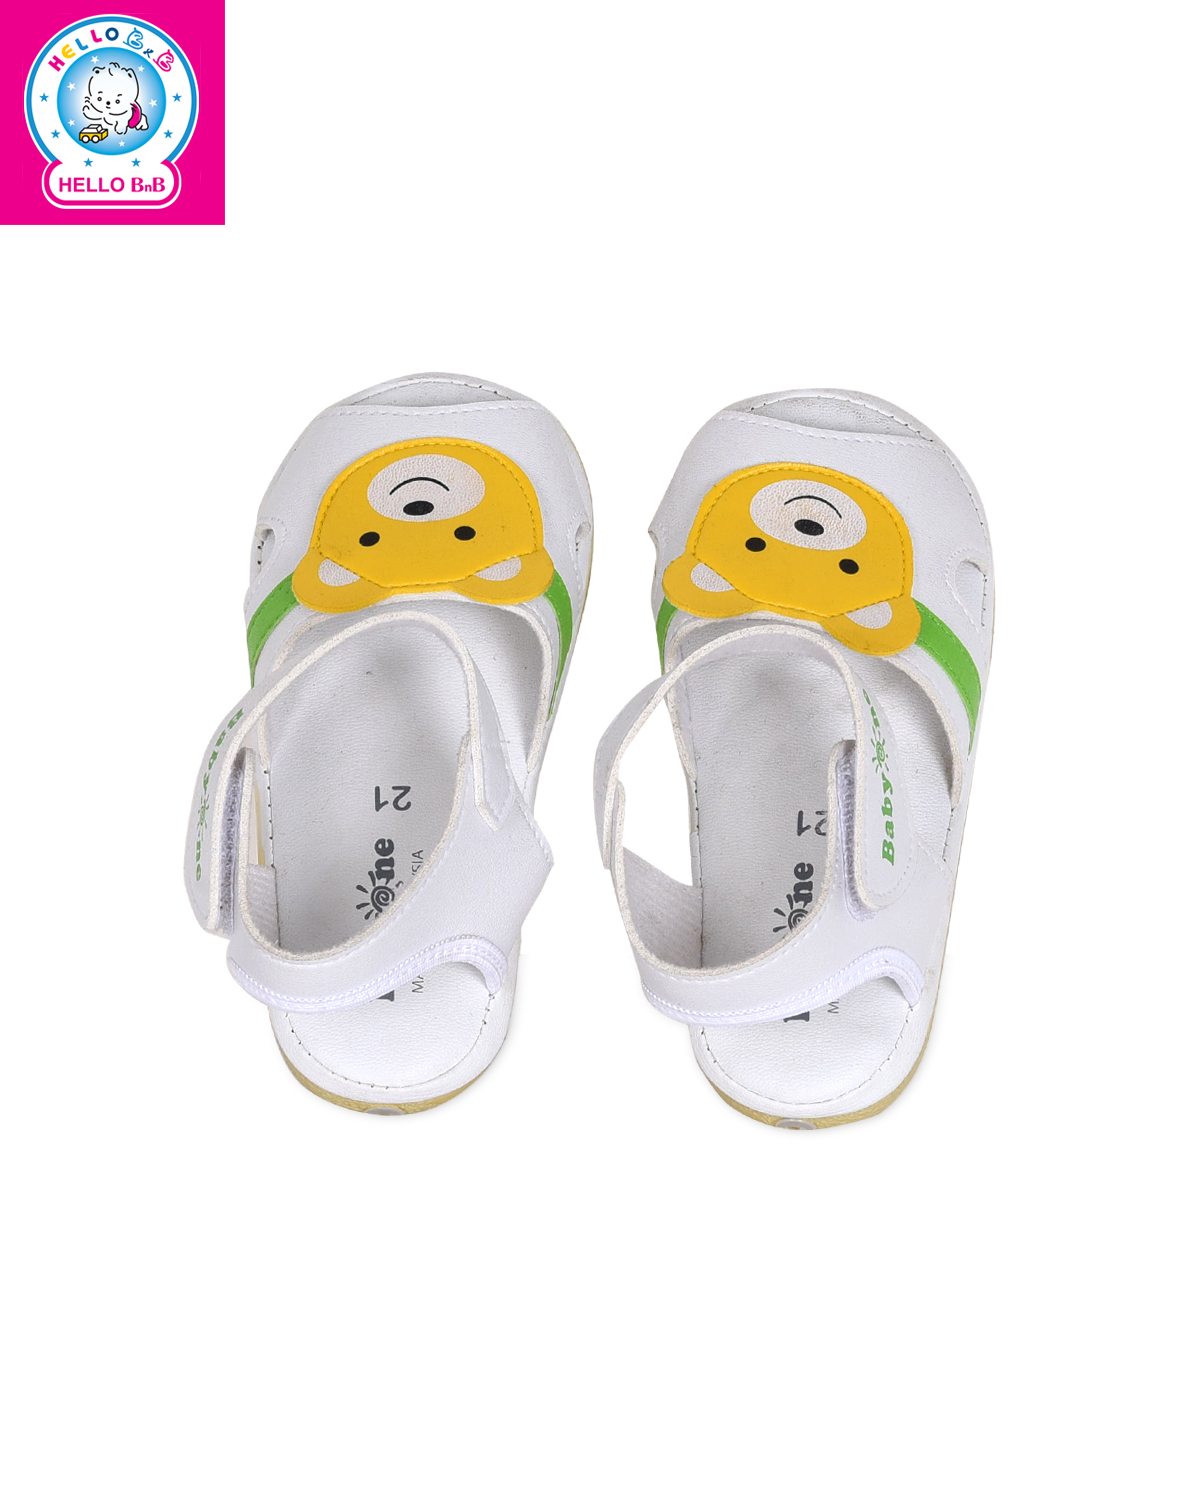 Giày sandal BabyOne 0809 size 20 White